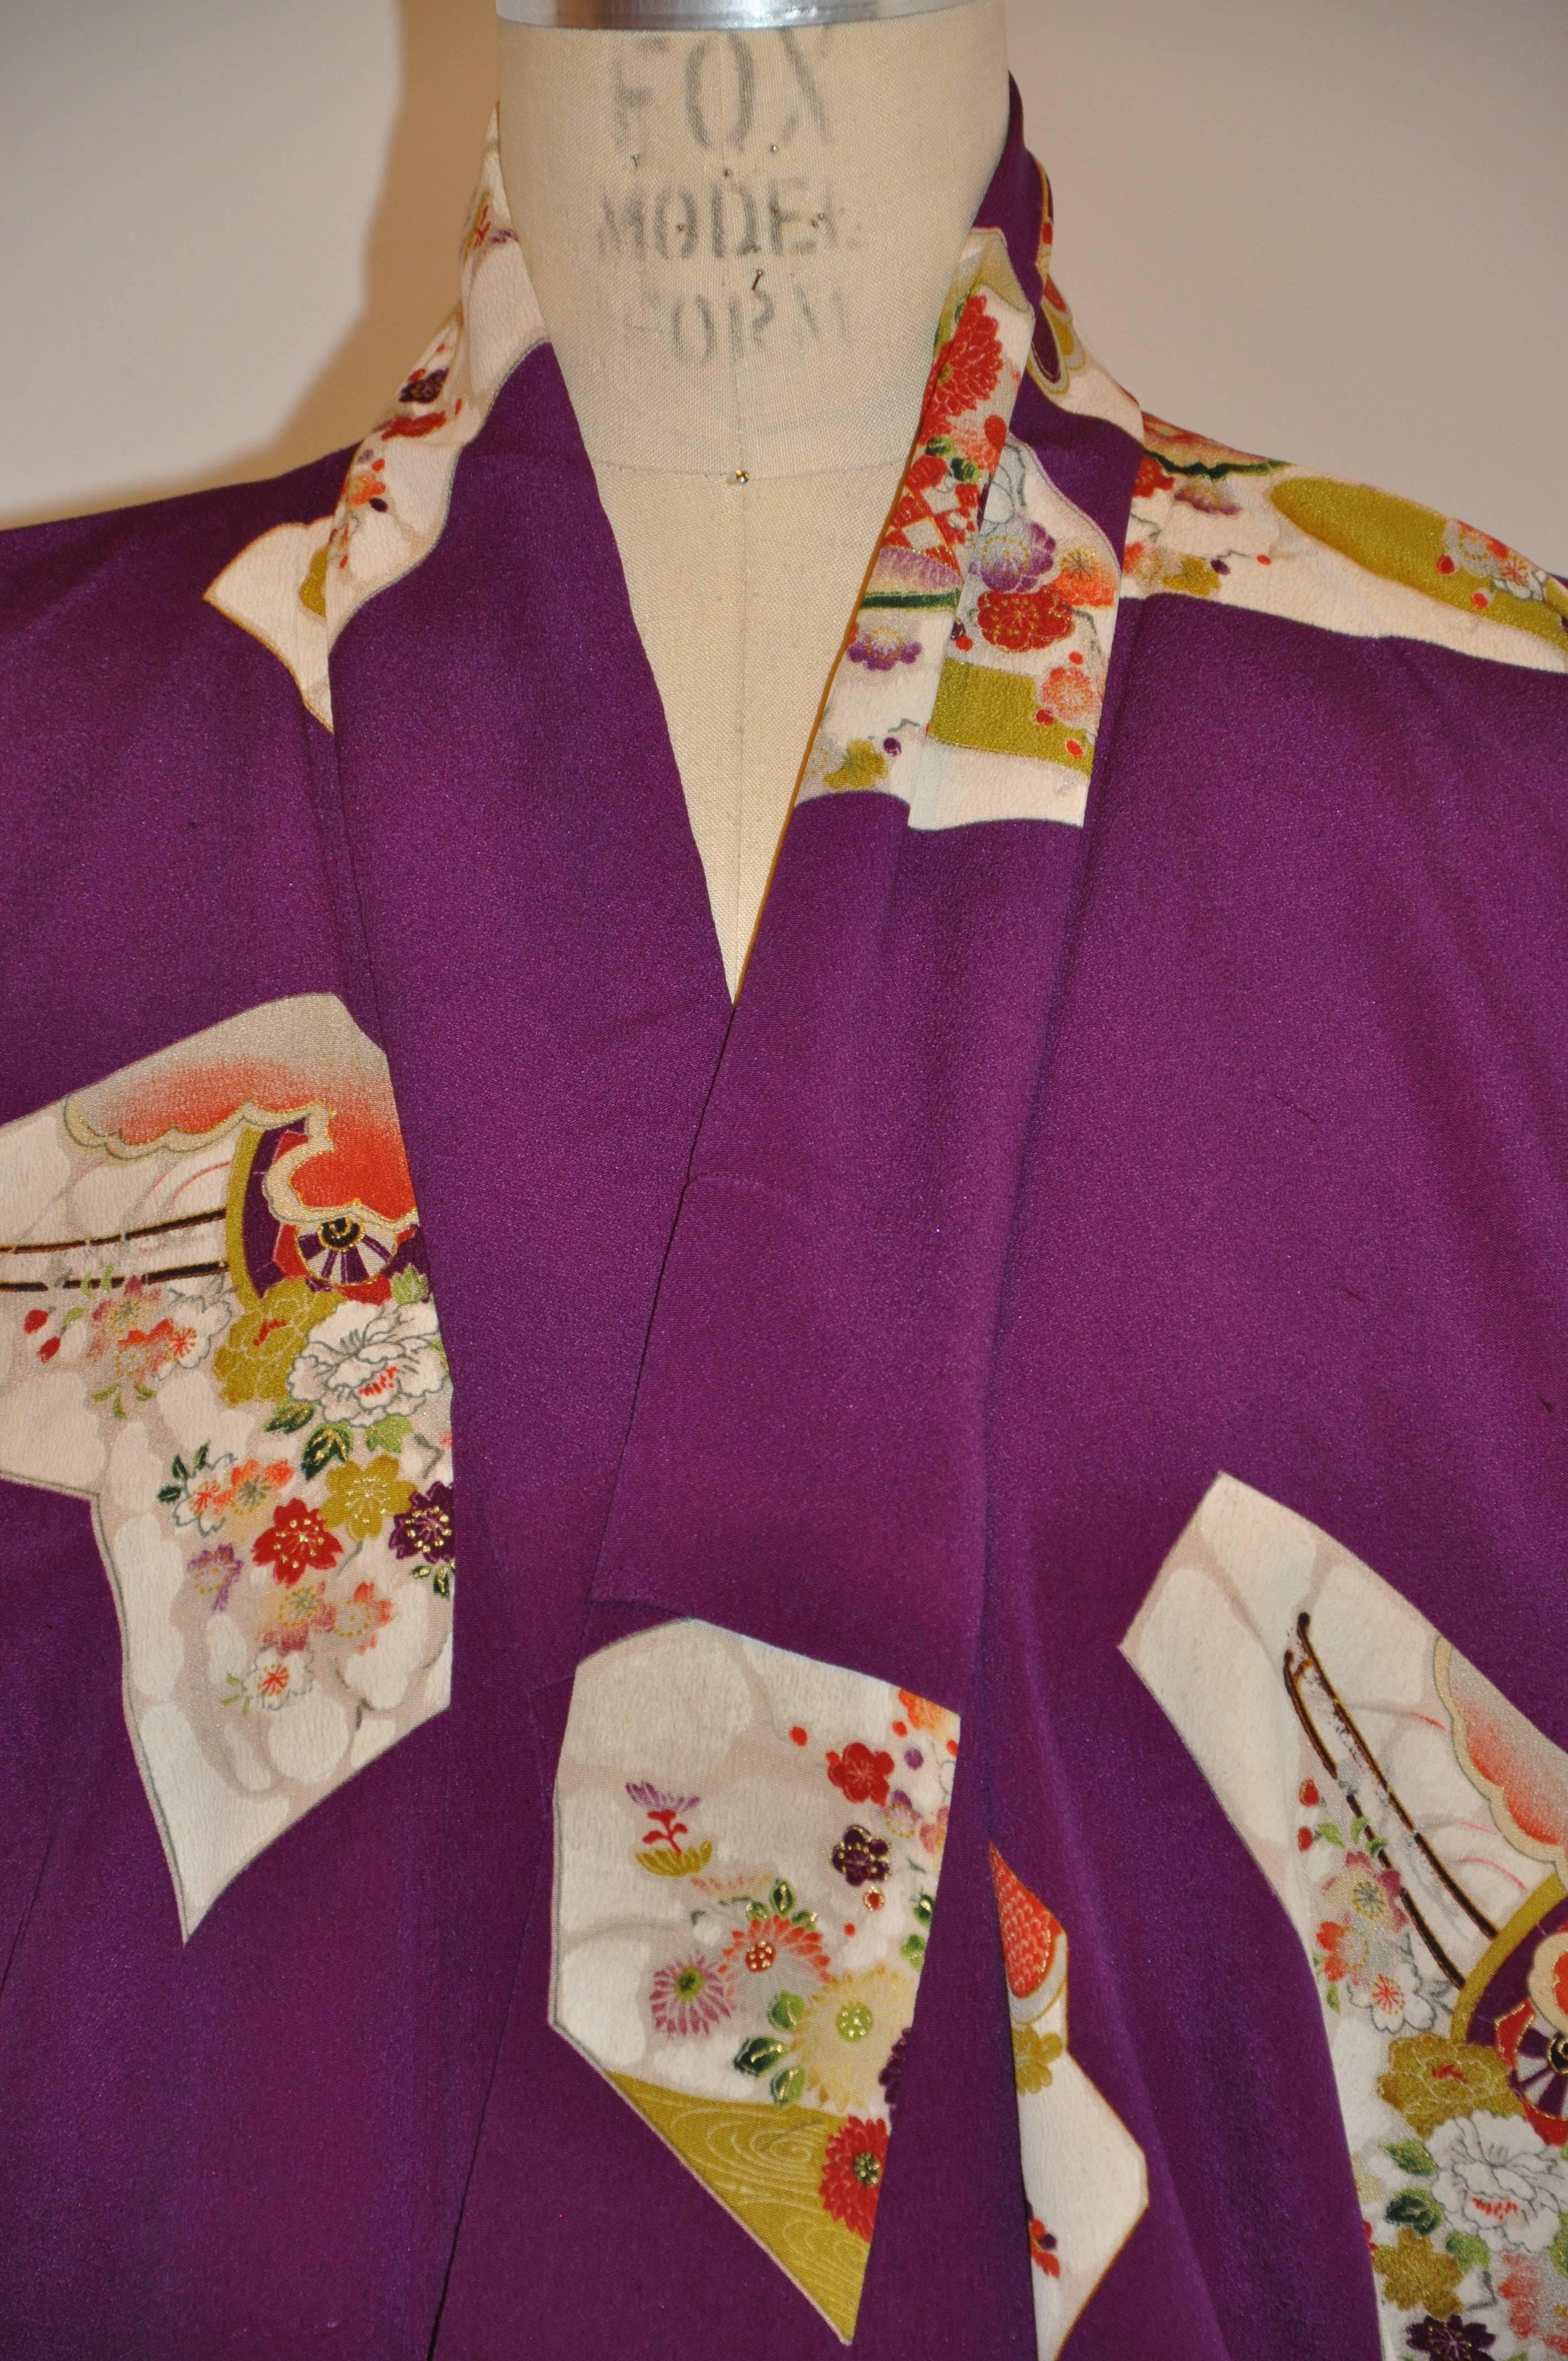        Dieser wunderbar kräftige violette Seidenkimono ist mit mehrfarbigen Blumendetails in abstrakten Blöcken übersät. Die Länge misst 51